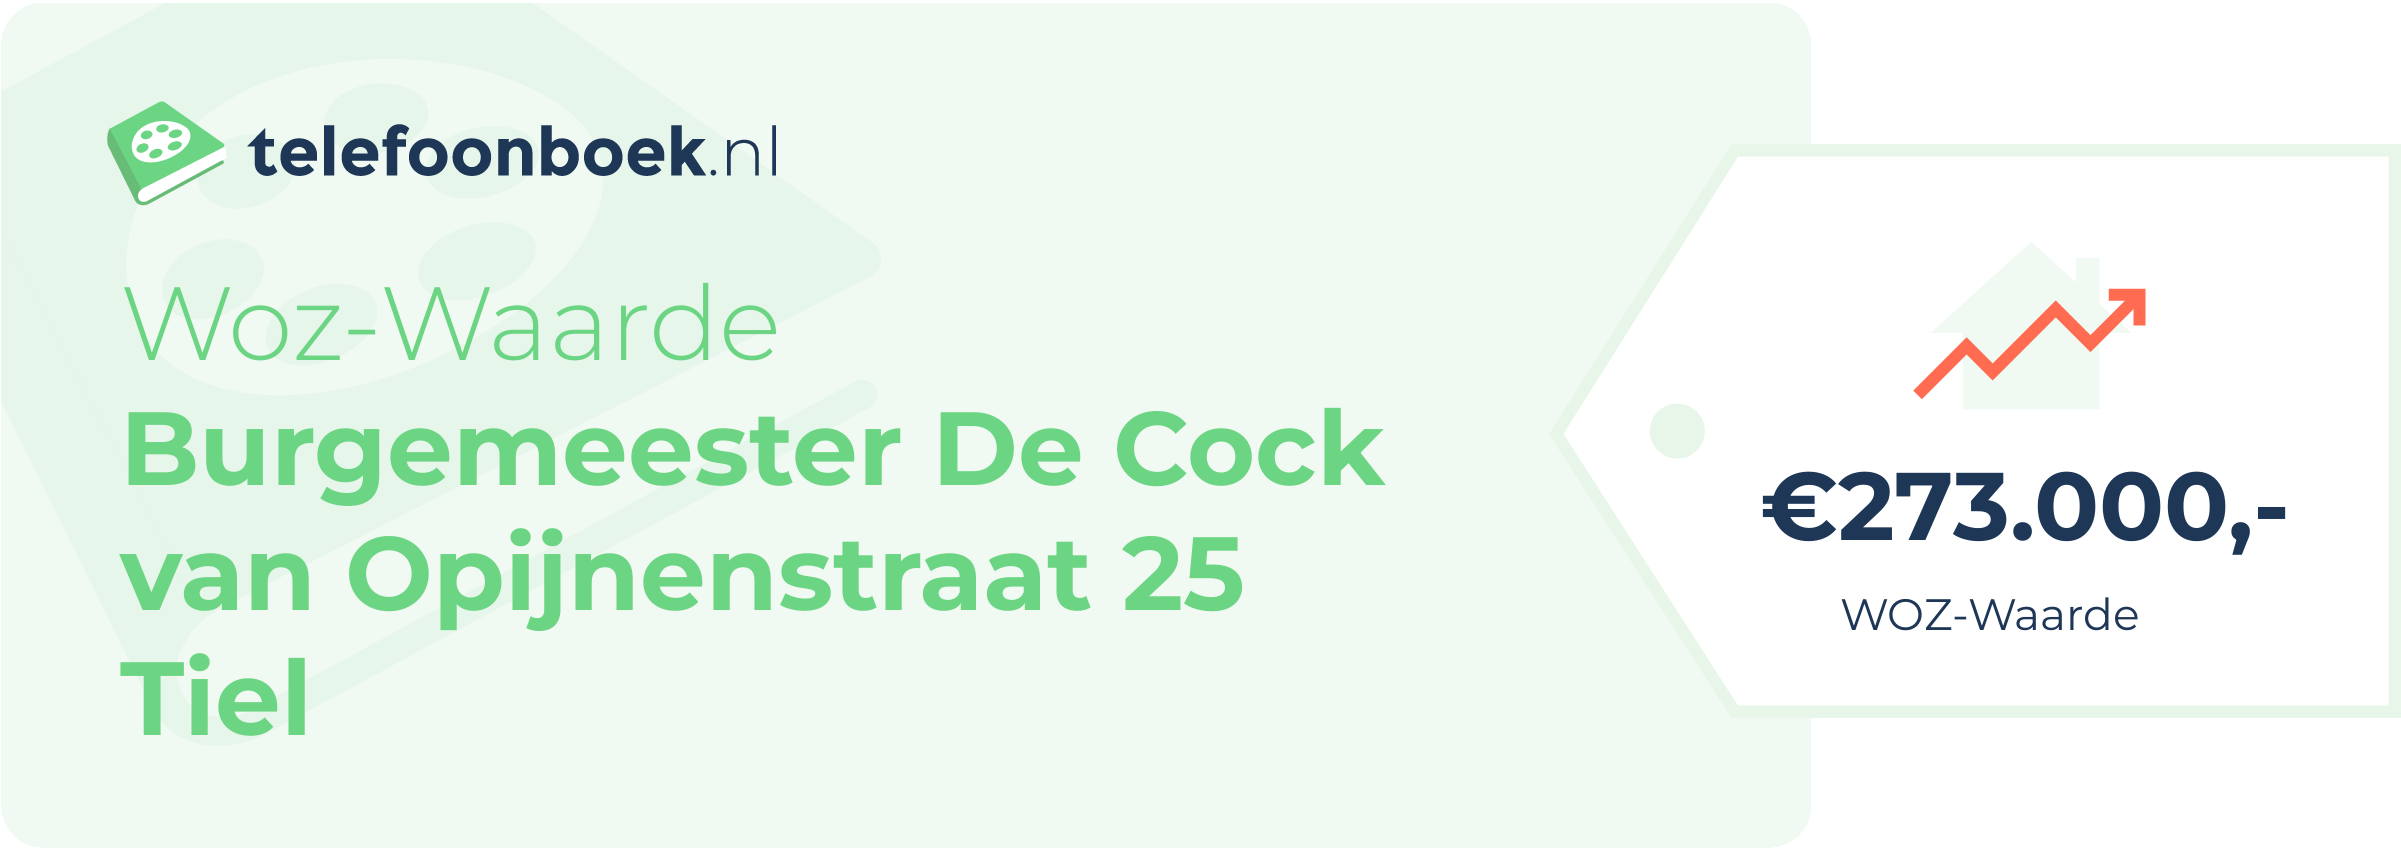 WOZ-waarde Burgemeester De Cock Van Opijnenstraat 25 Tiel